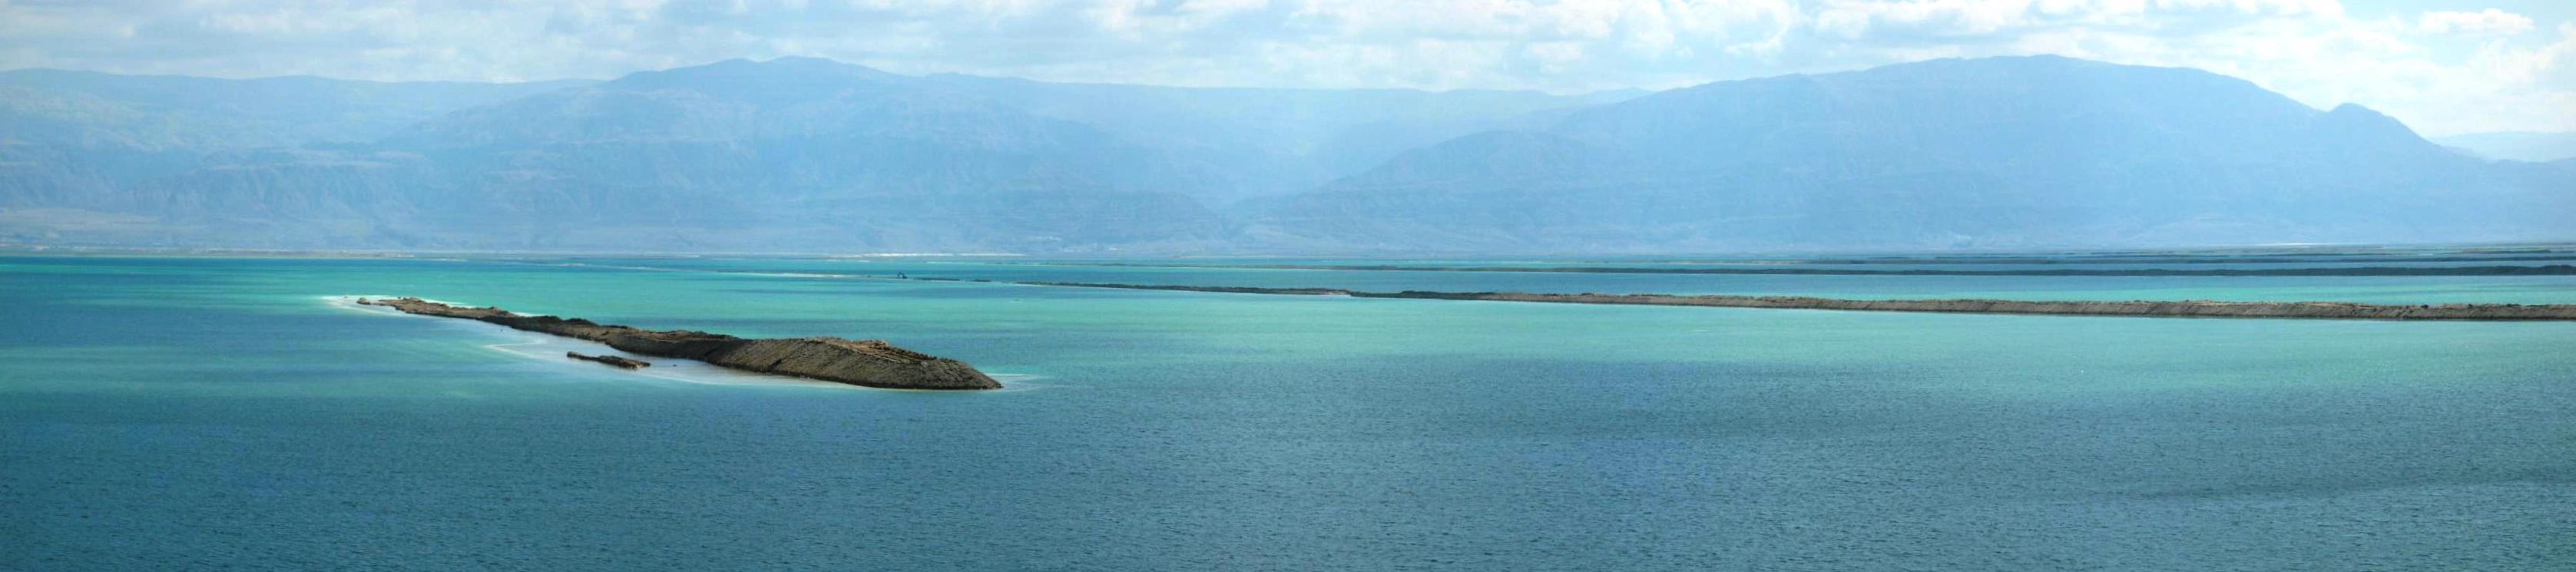 ים המלח - מרכז תיירות עולמי